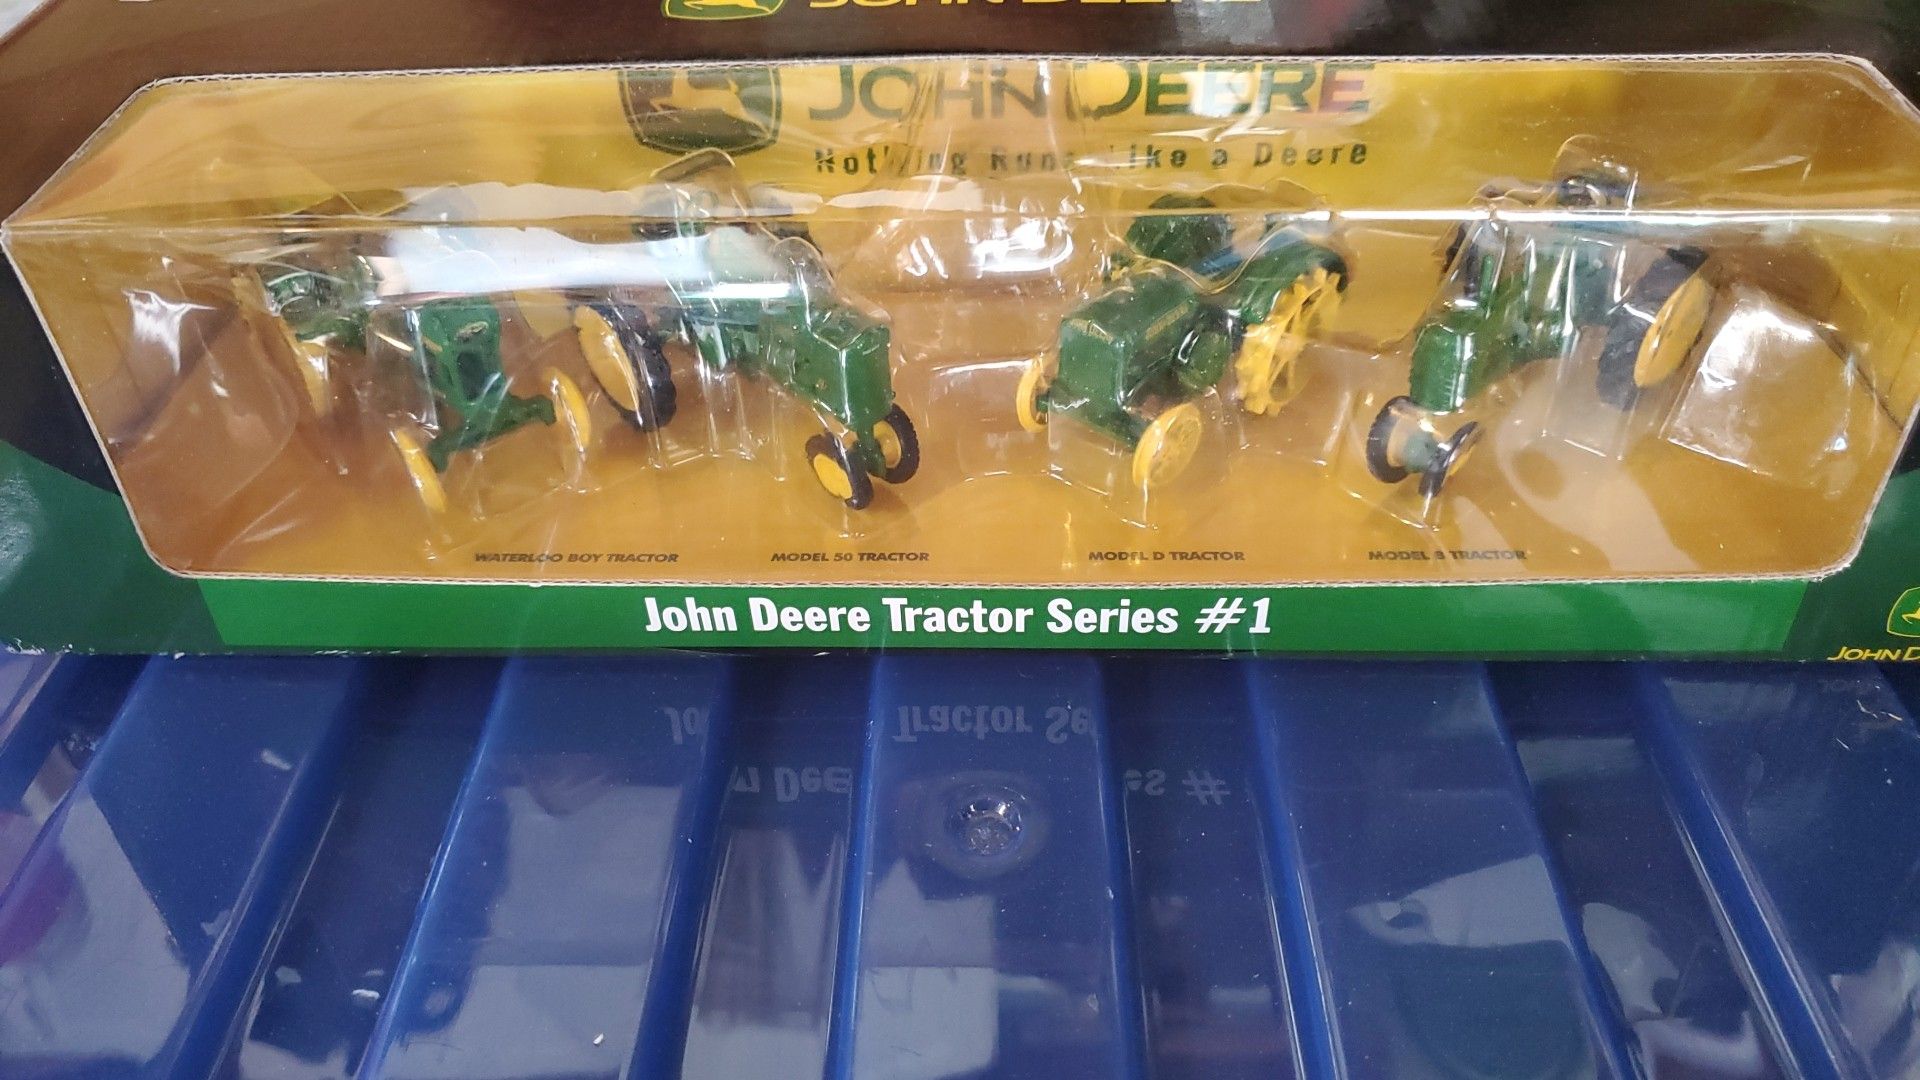 John Deere's tractor series#1